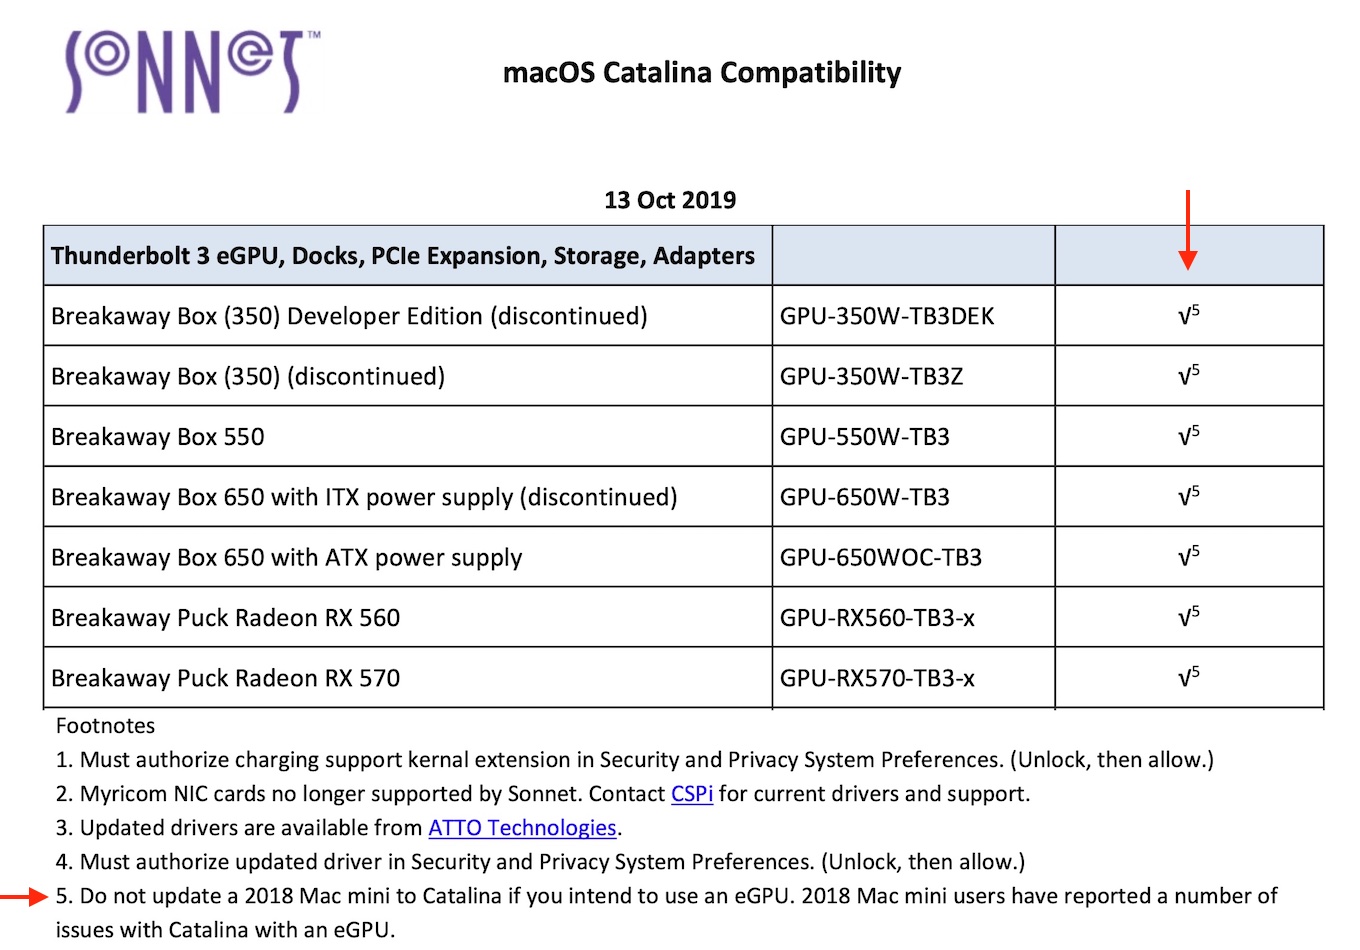 Mac mini 2018 eGPU issues with Catalina